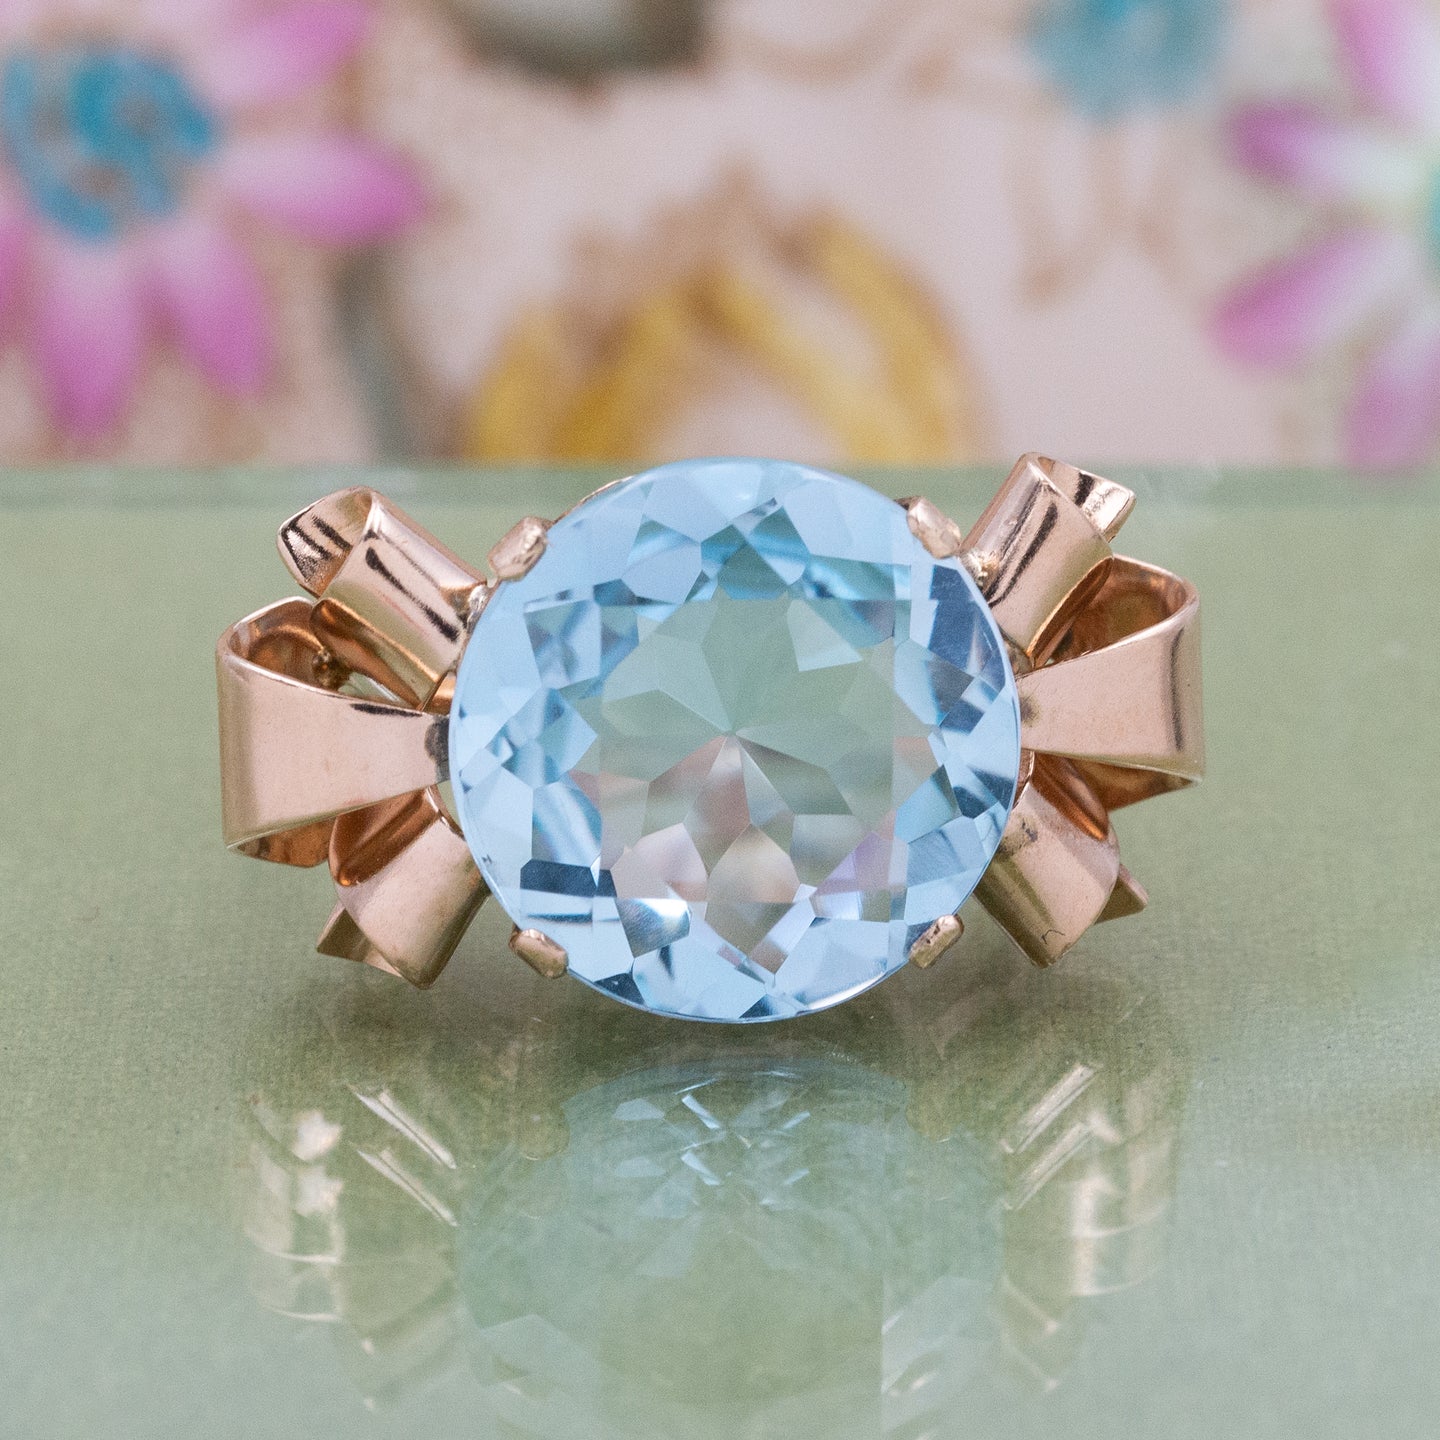 Art deco 18ct gold, aquamarine solitaire ring, with rose cut diamond s